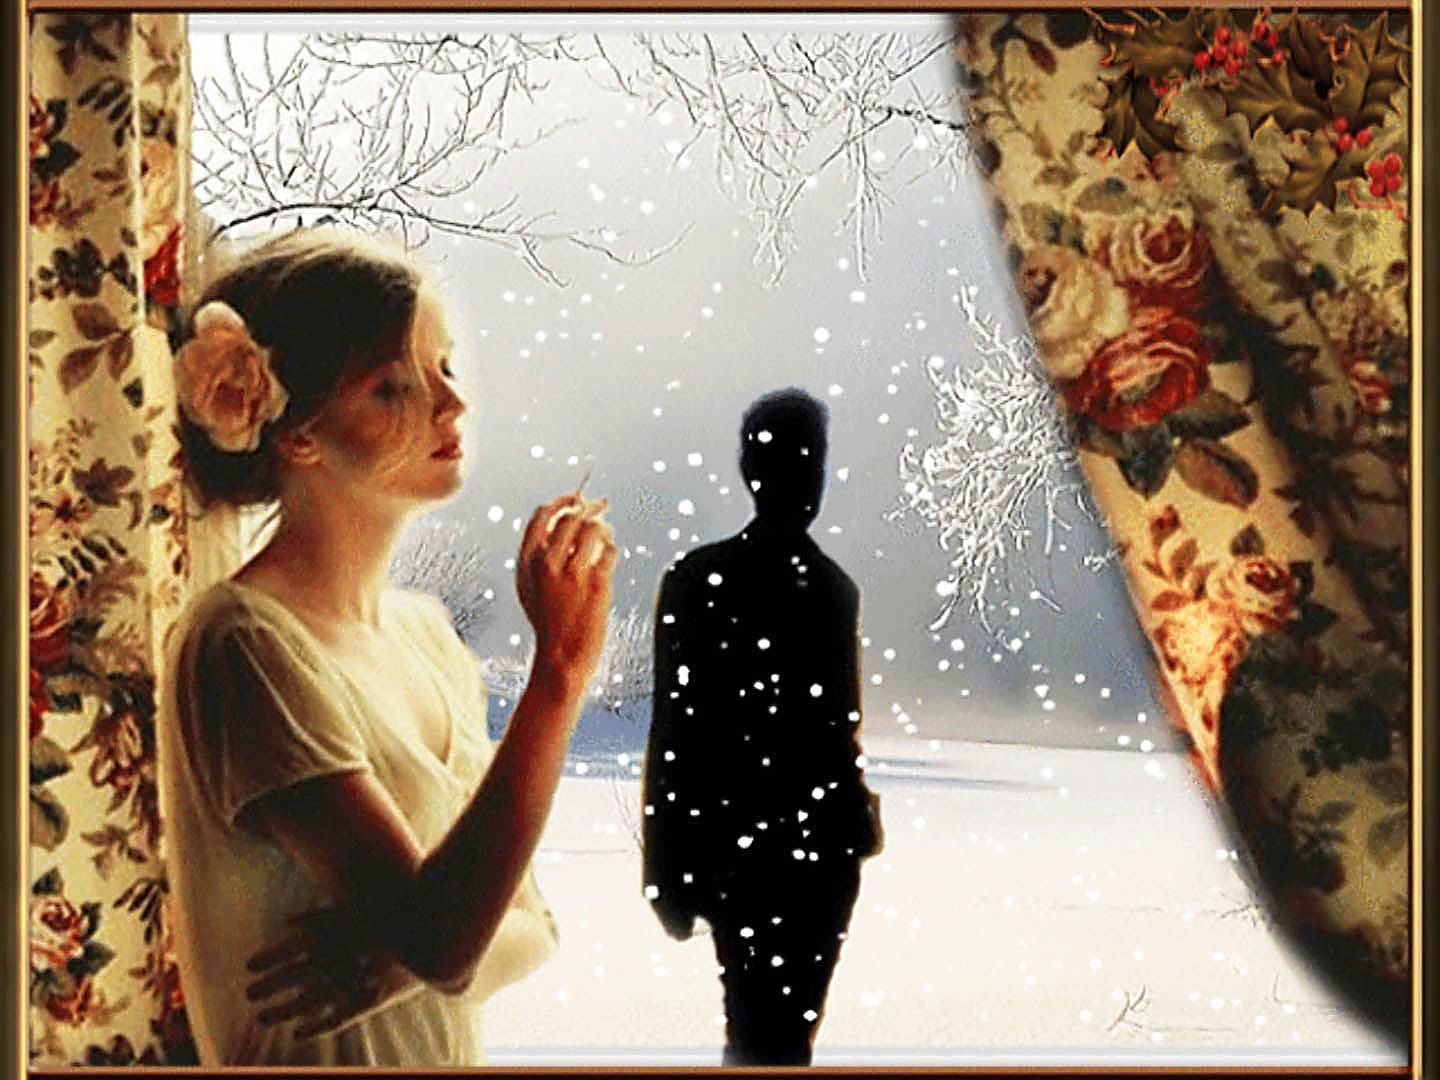 Прощание вечером. Ждет у окна. Зима расставание. Мужчина и женщина у окна. Расставание любовь зима.